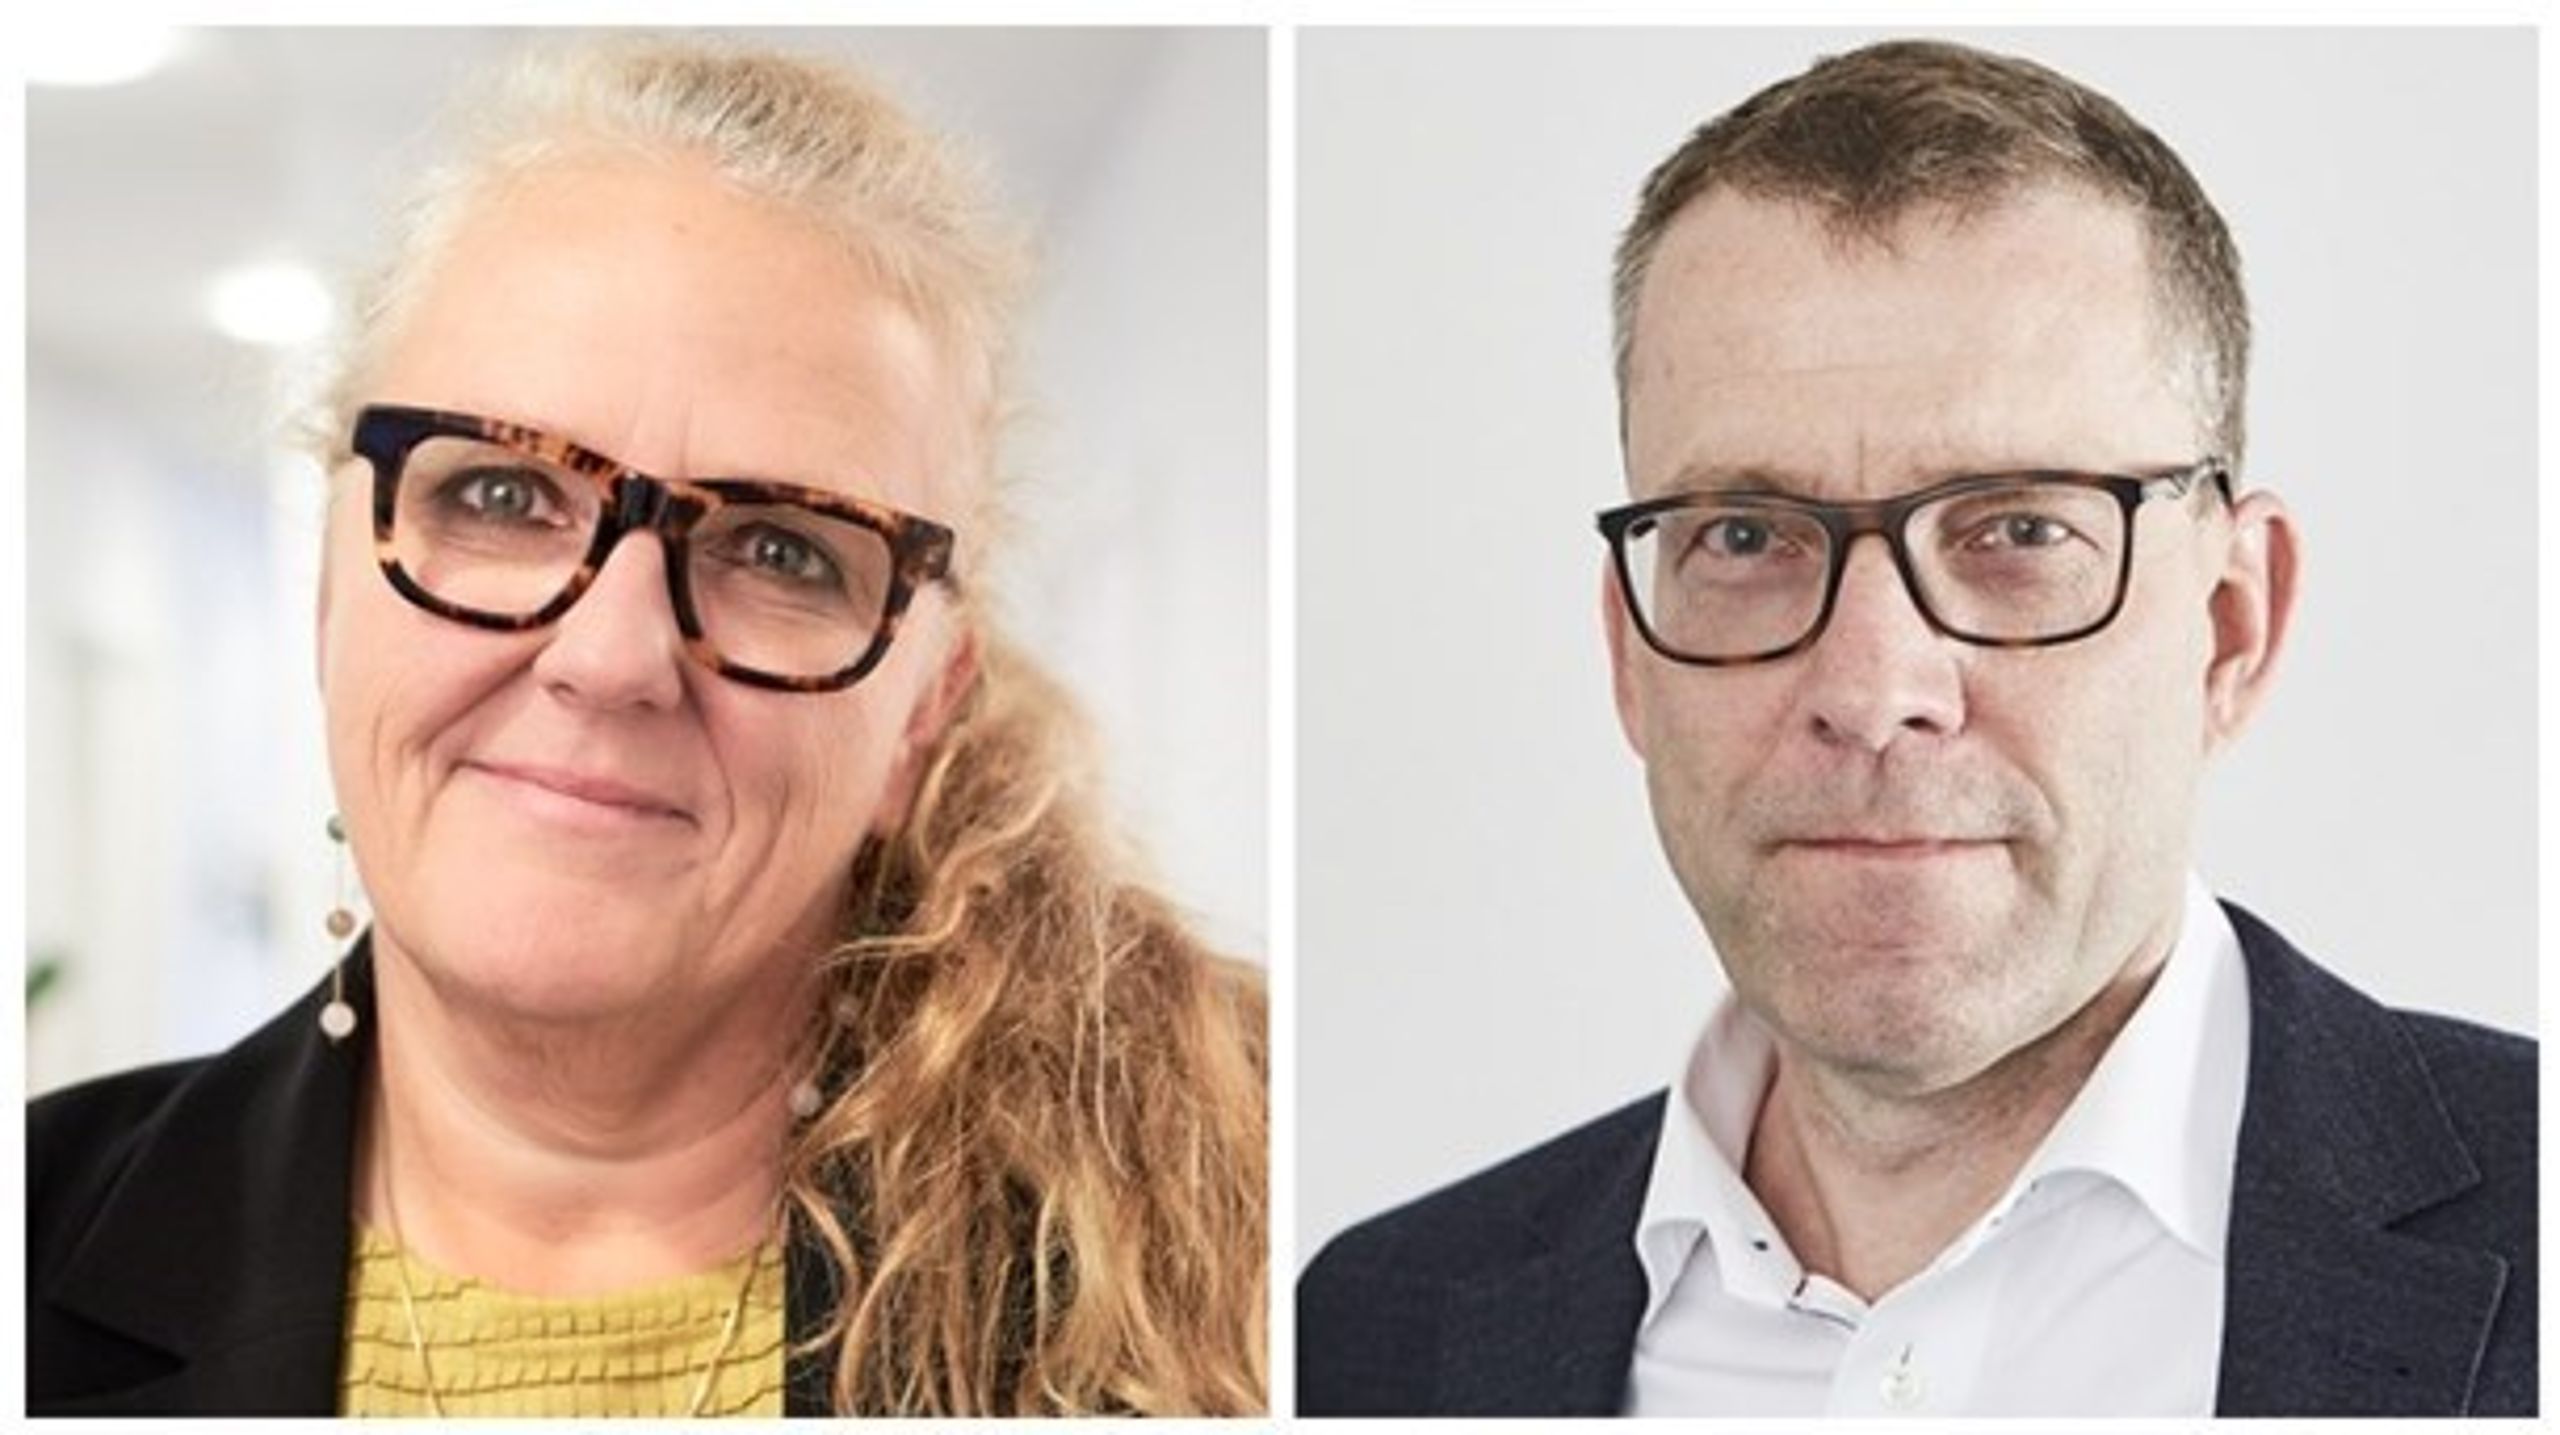 I Statsministeriet er det lykkedes at etablere et plussumsspil mellem statsministeren og departementschefen. Det ser umiddelbart ud til, at de begge vinder, og at de begge får bedre muligheder for at påvirke, skriver&nbsp;Henning Meldgaard og Tina Overgaard.